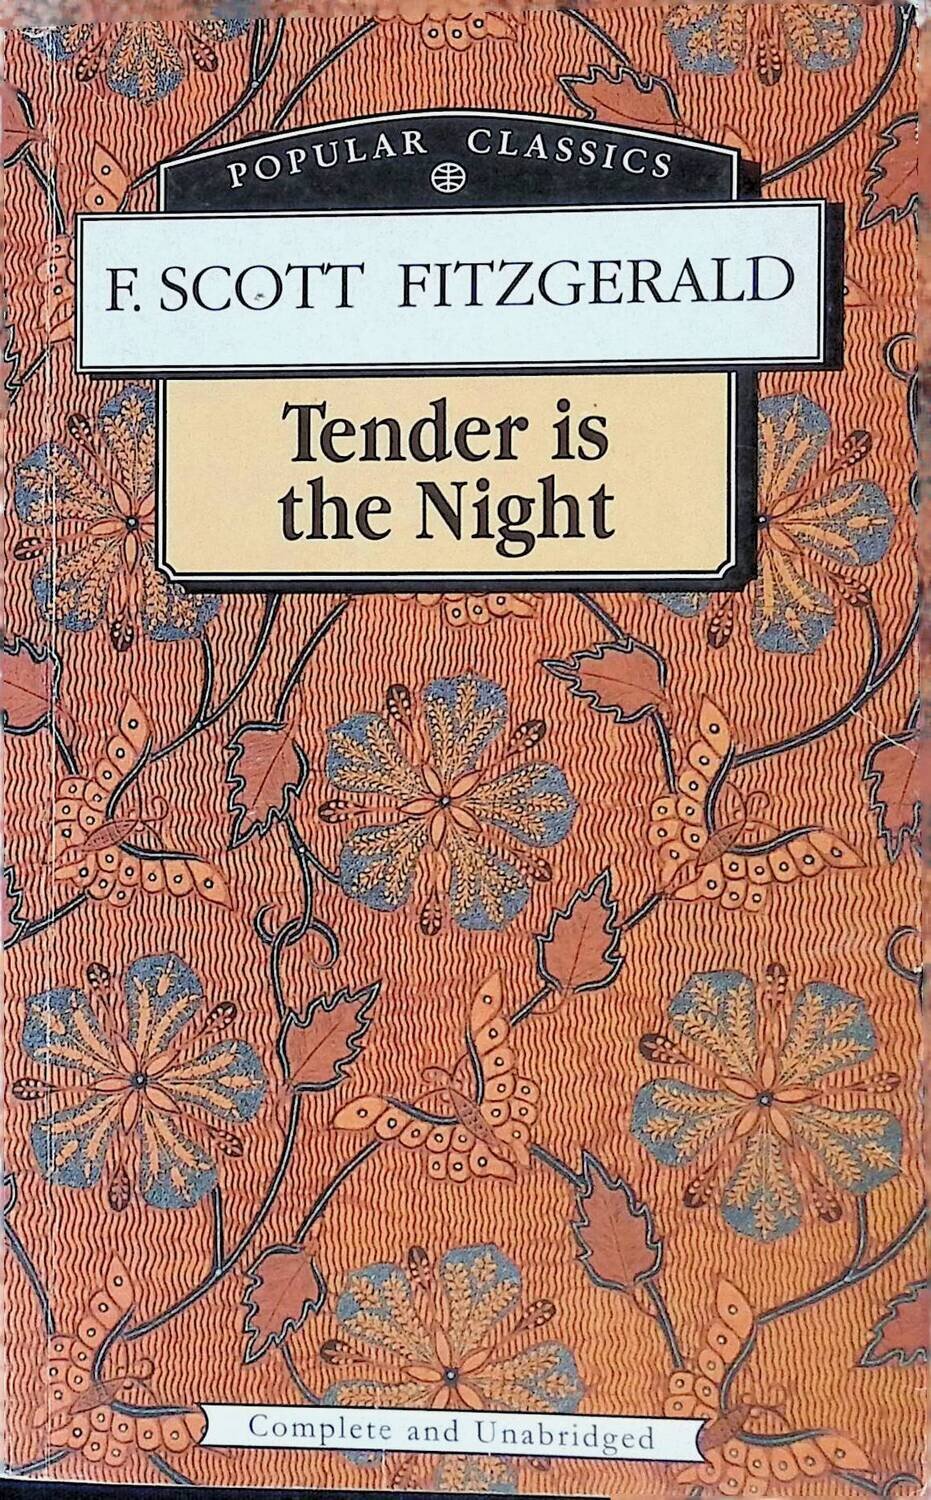 Tender is the Night; Fitzgerald Francis Scott Key